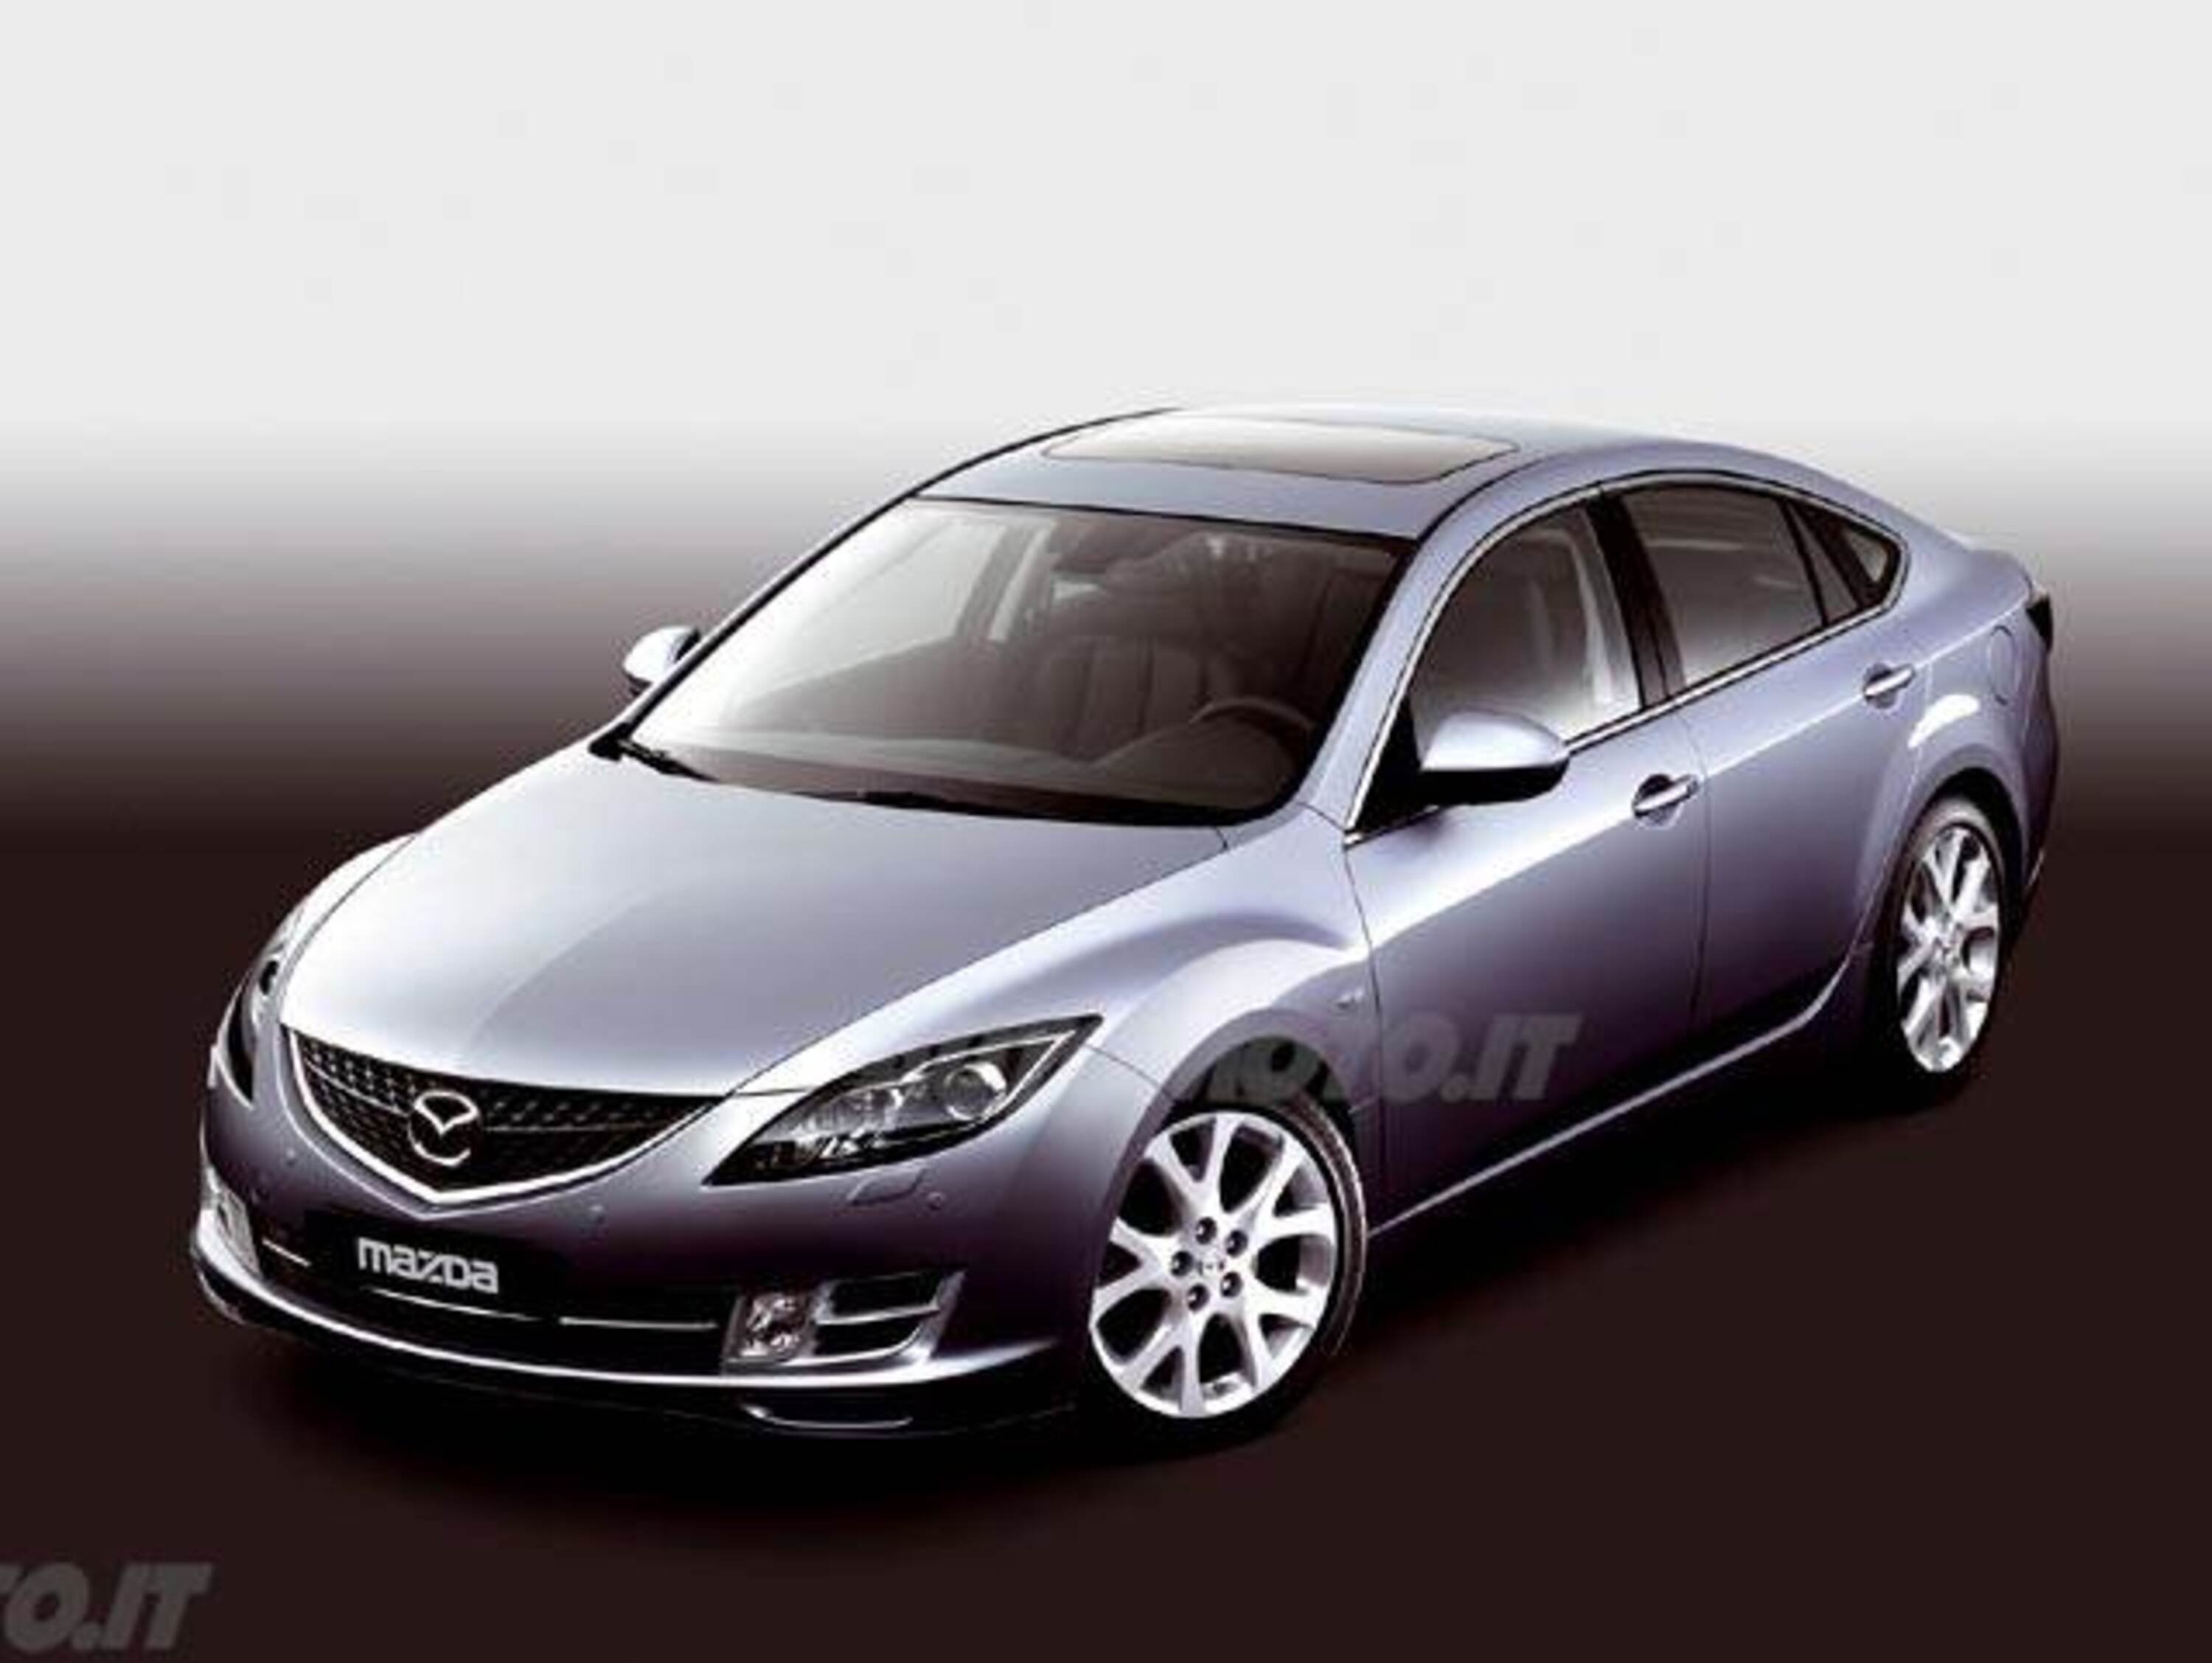 Mazda Mazda6 Hatchback 2.2 CD 16V 163CV Sp. Tour. Exec.